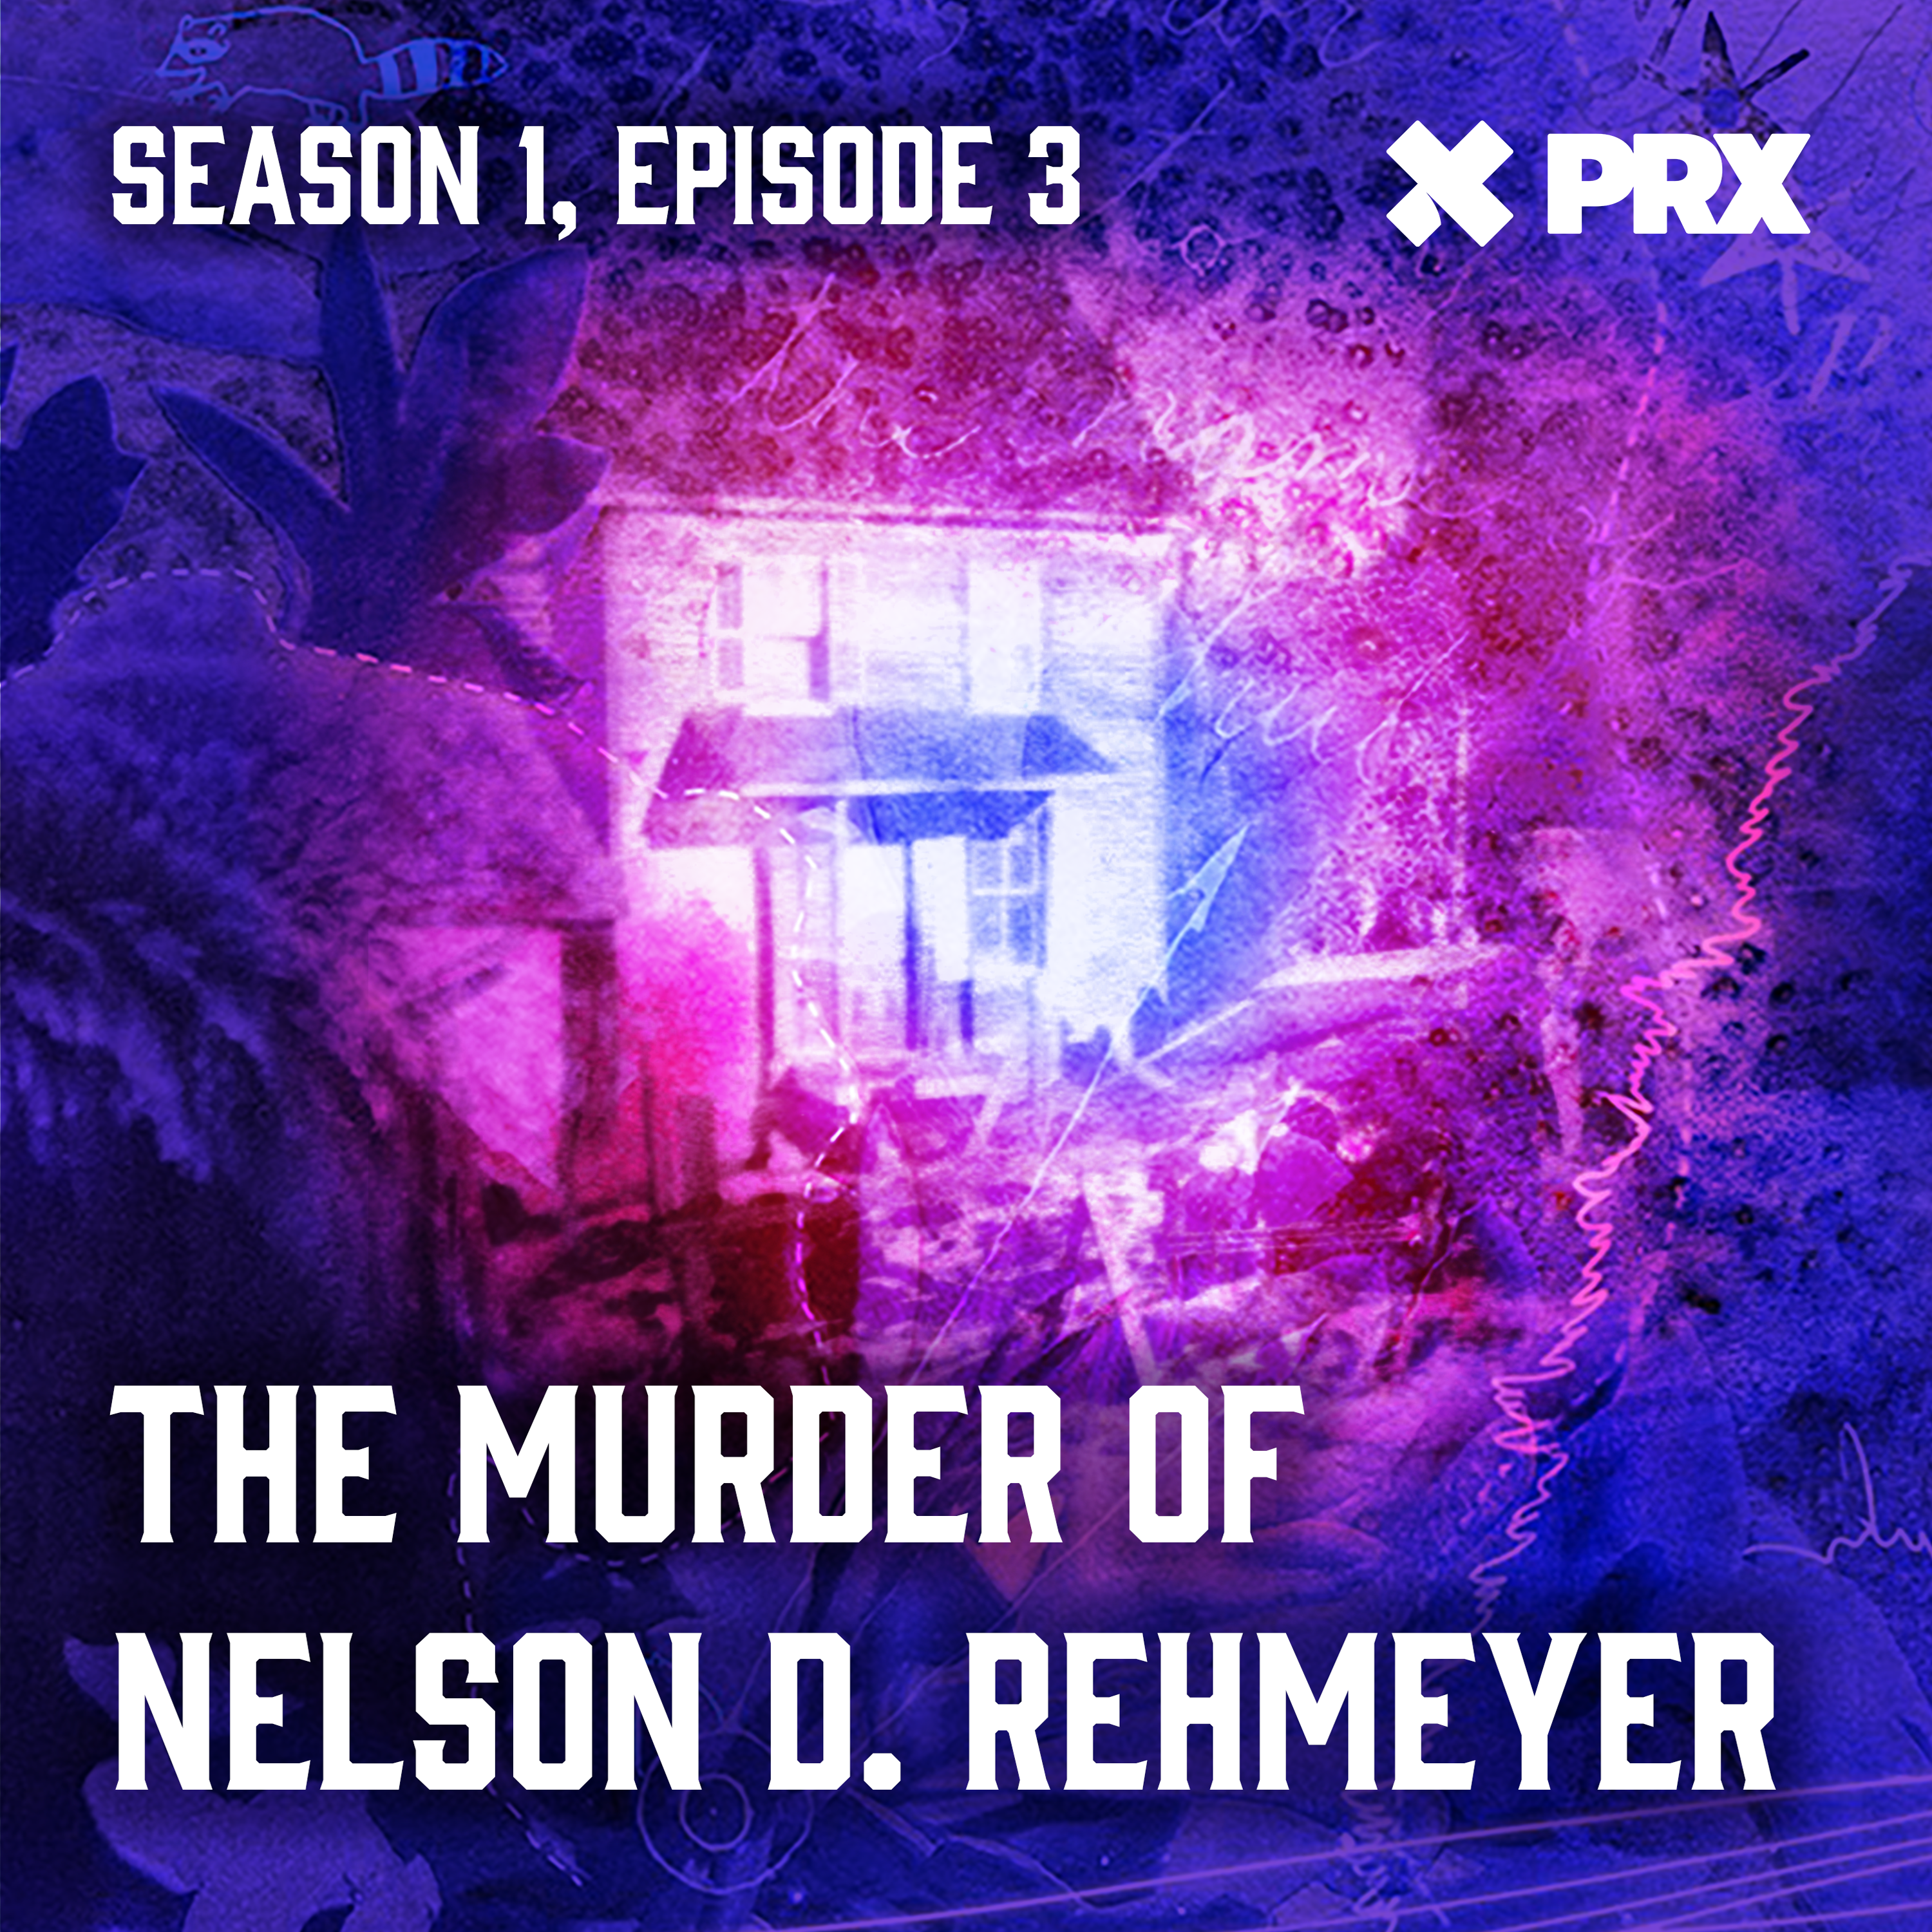 The Murder of Nelson D. Rehmeyer